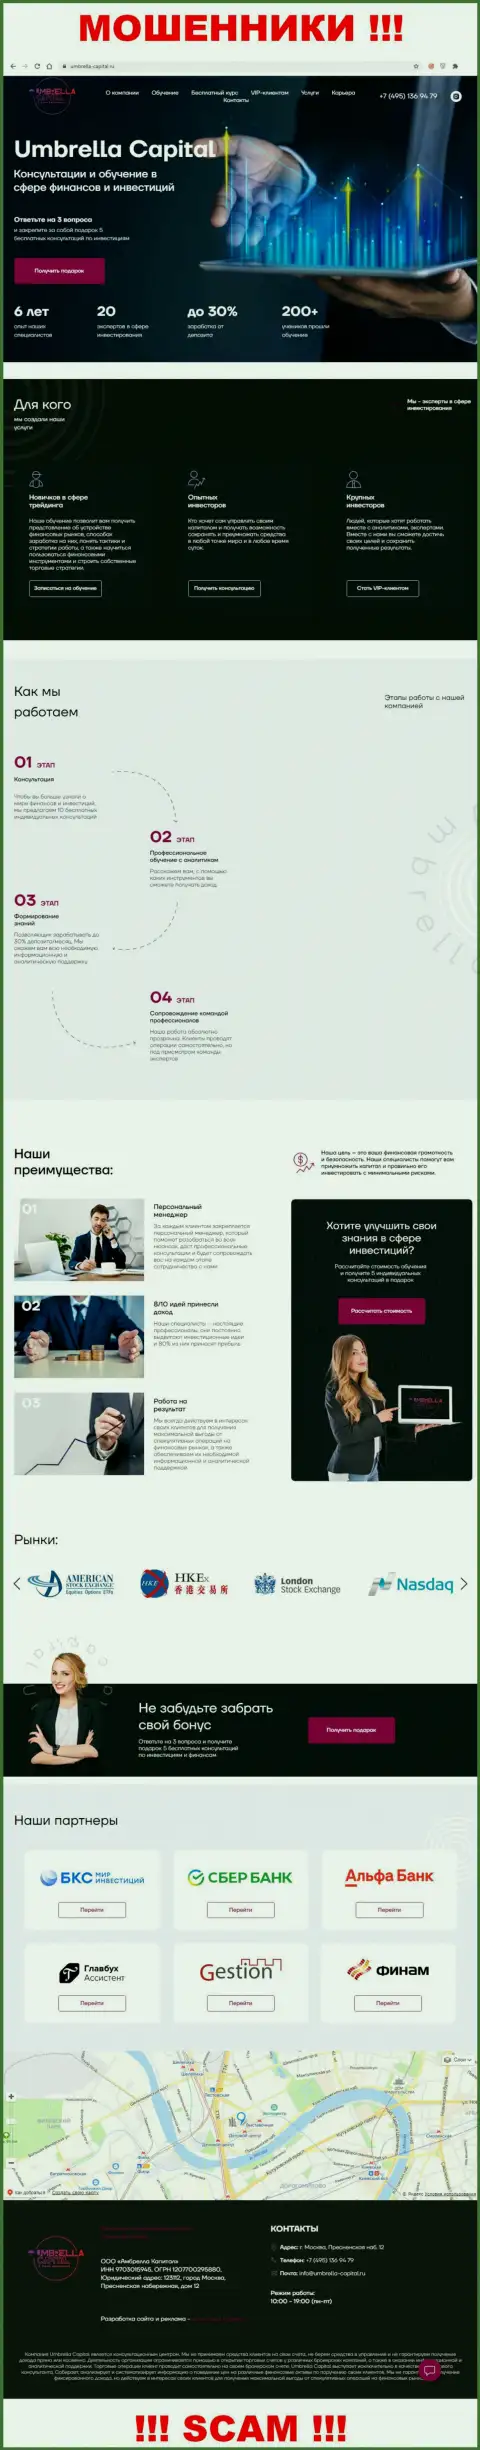 Вид официального веб-сервиса преступно действующей организации Umbrella-Capital Ru